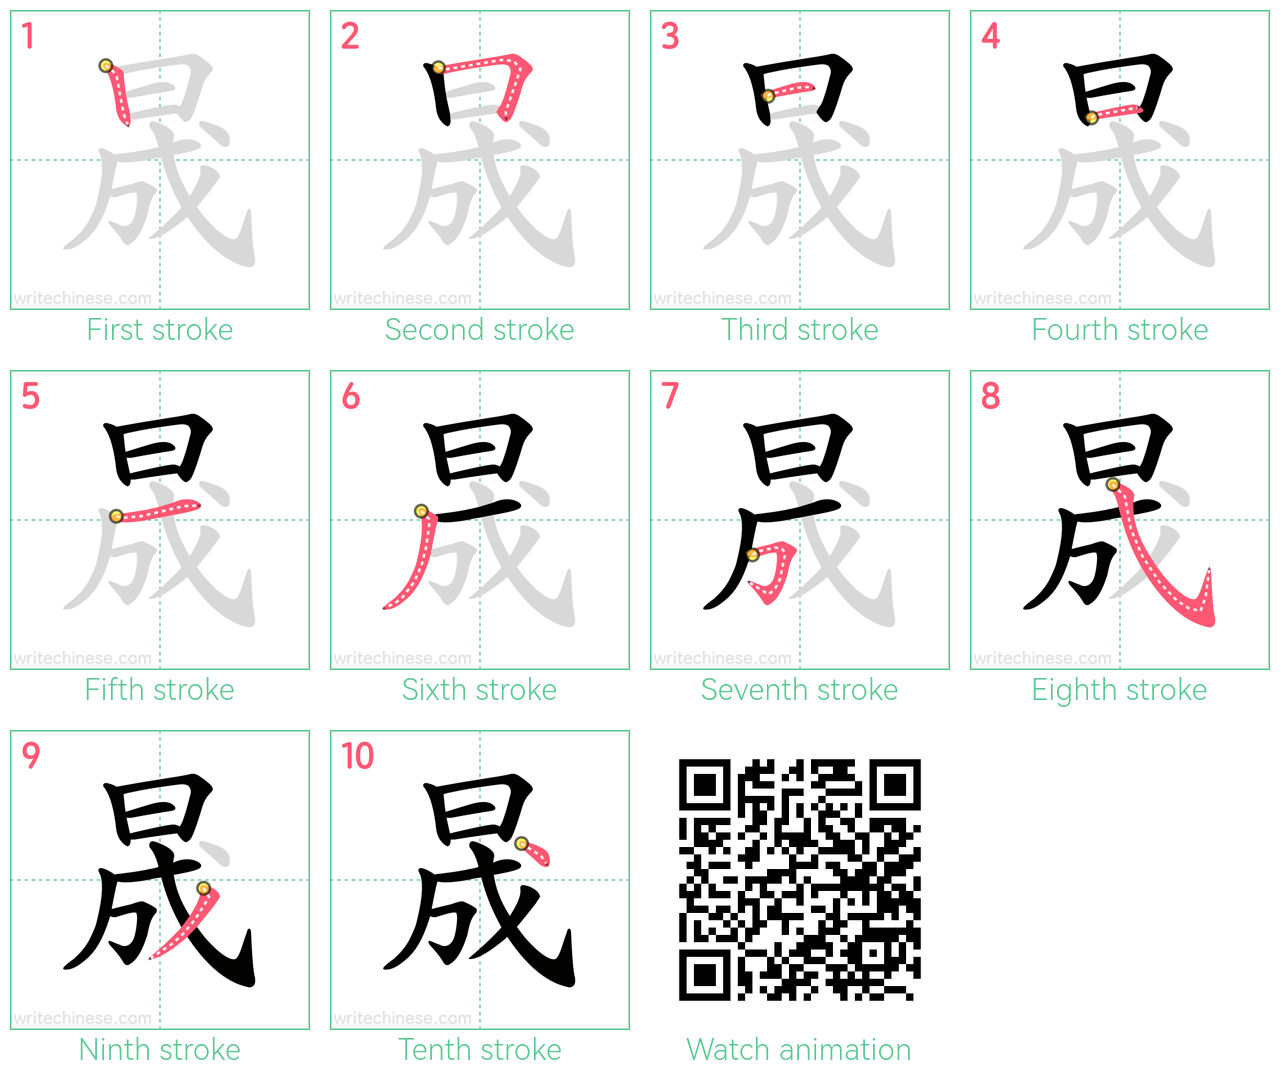 晟 step-by-step stroke order diagrams